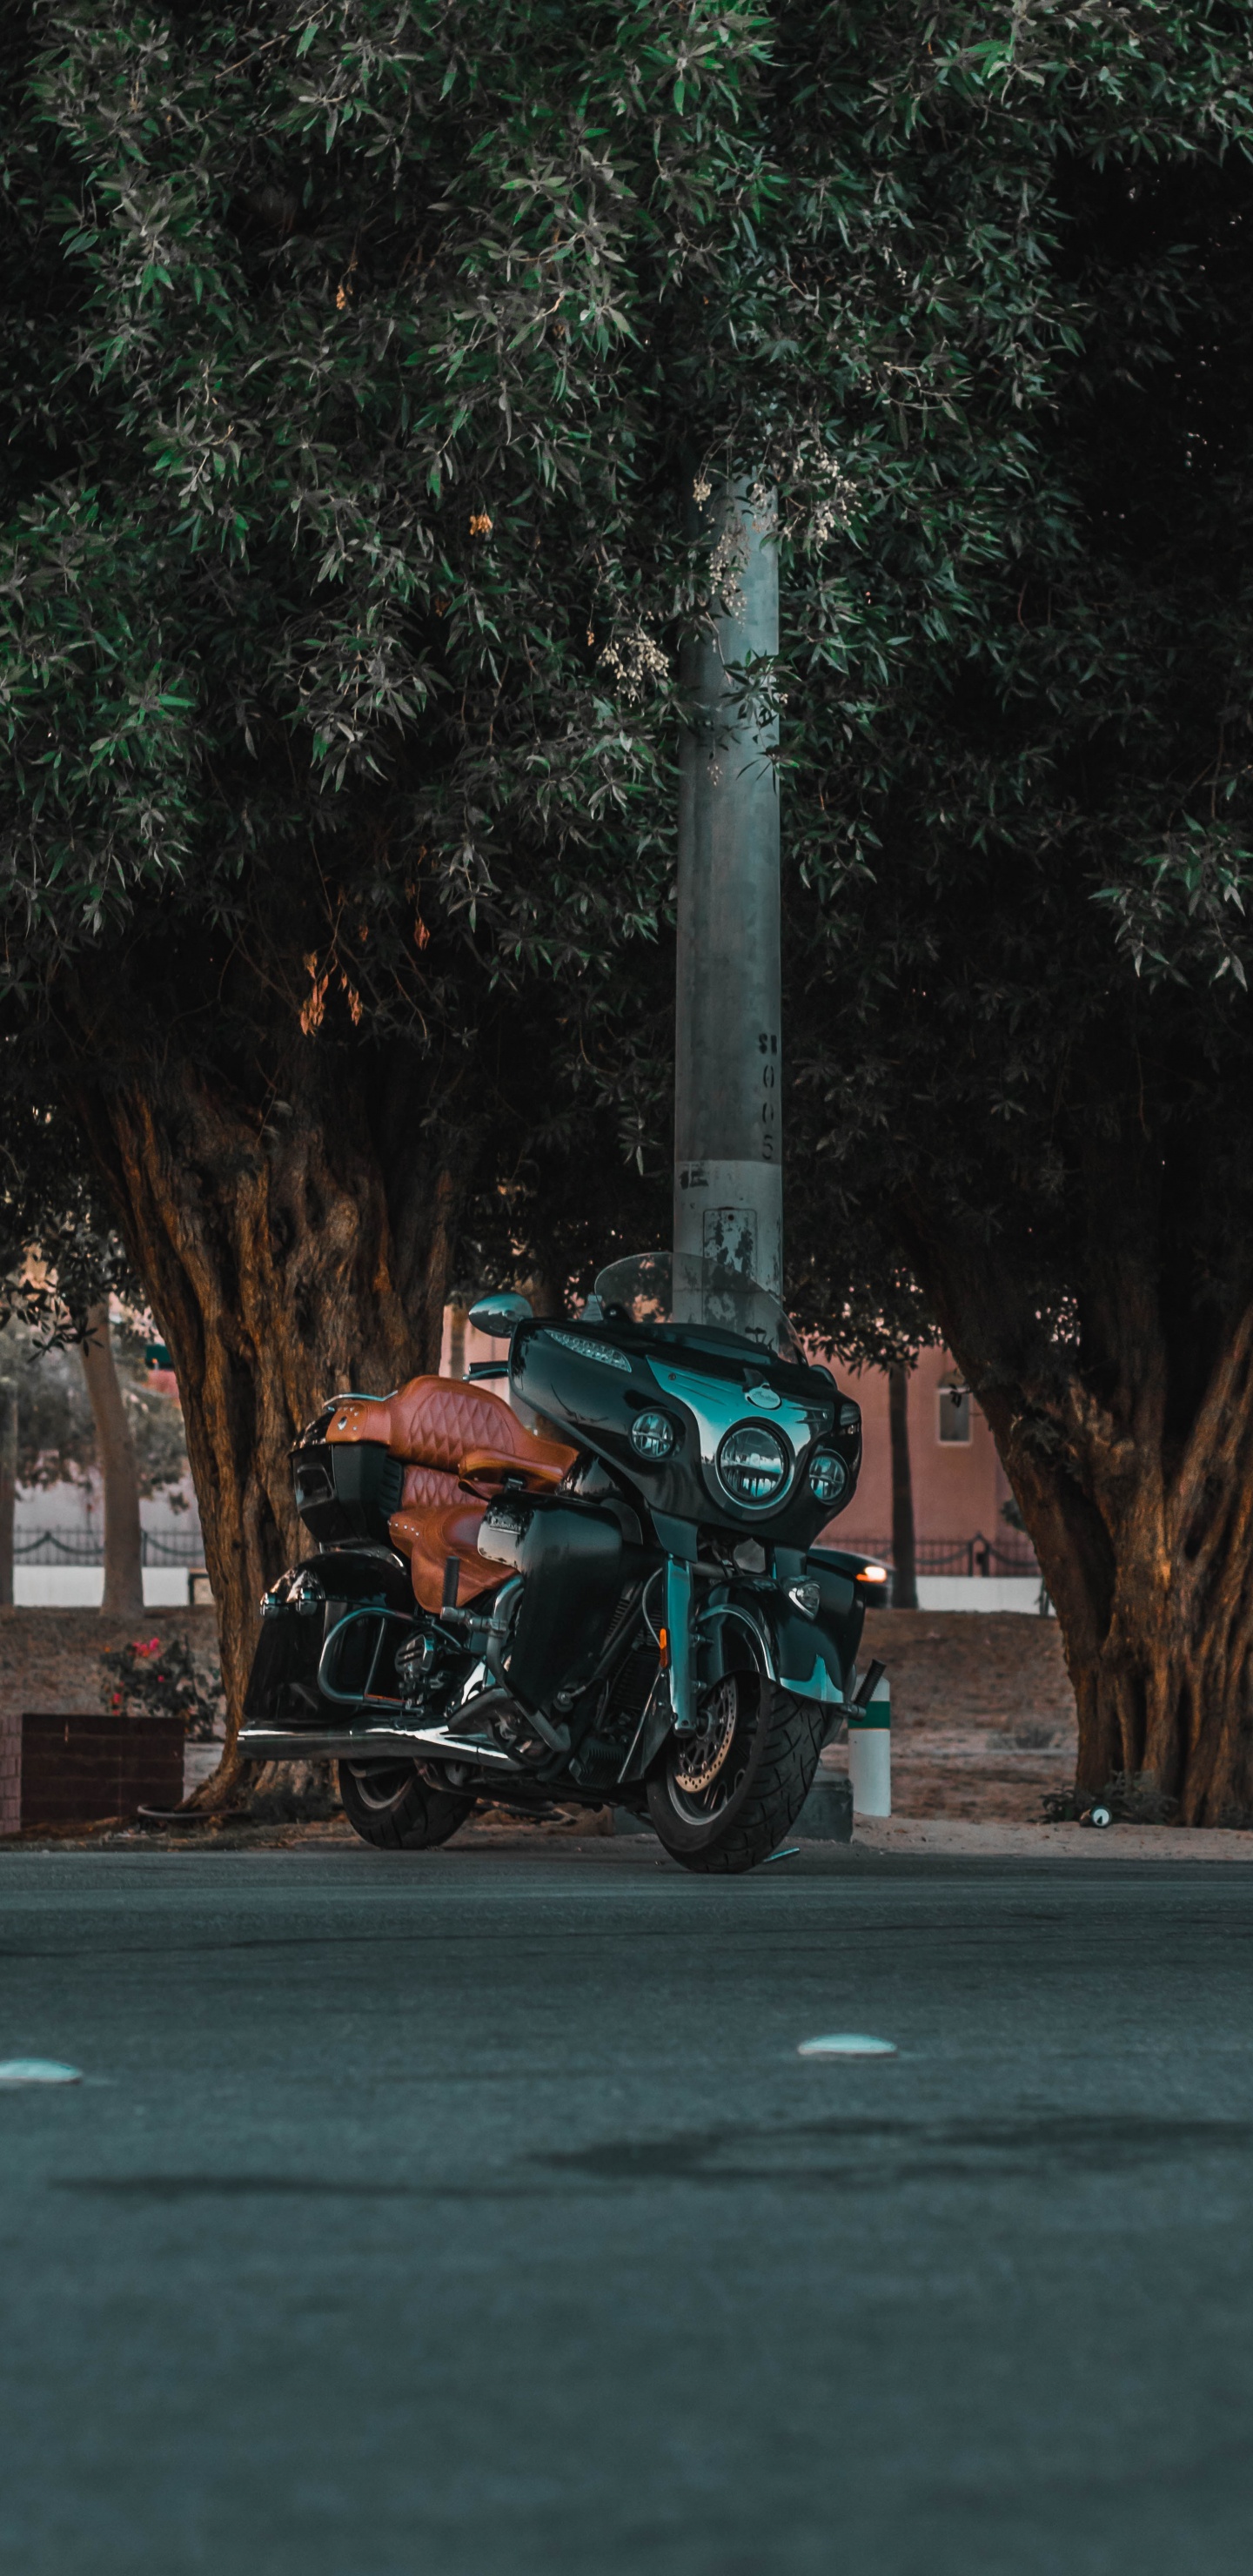 Motocicleta Verde y Negra Estacionada en la Carretera de Hormigón Gris Durante el Día. Wallpaper in 1440x2960 Resolution